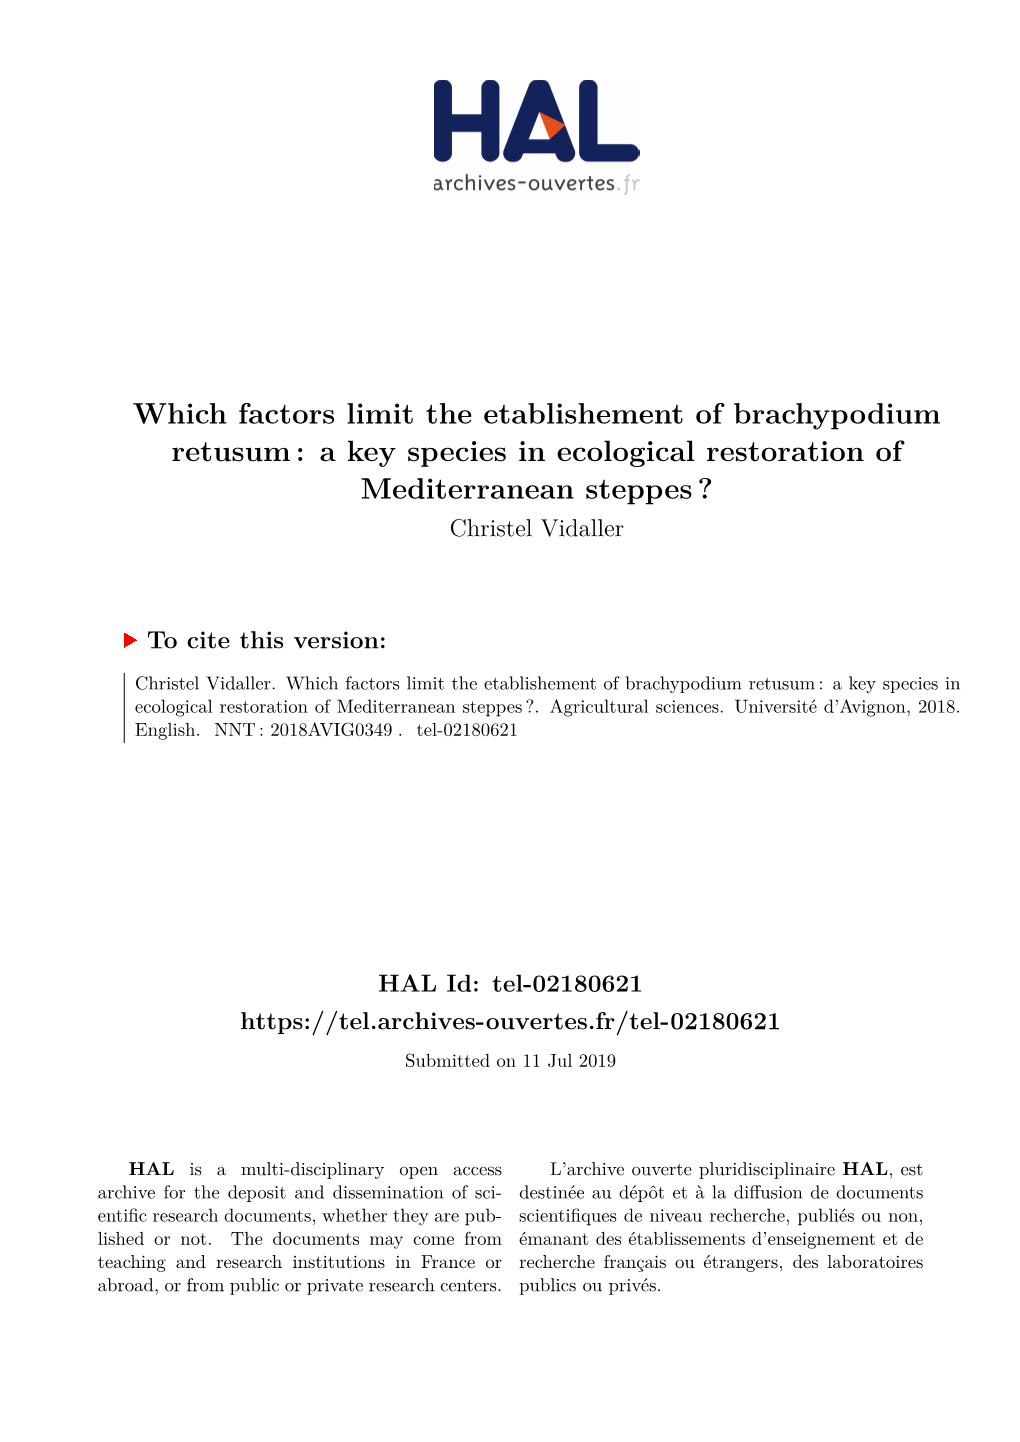 Which Factors Limit the Etablishement of Brachypodium Retusum: a Key